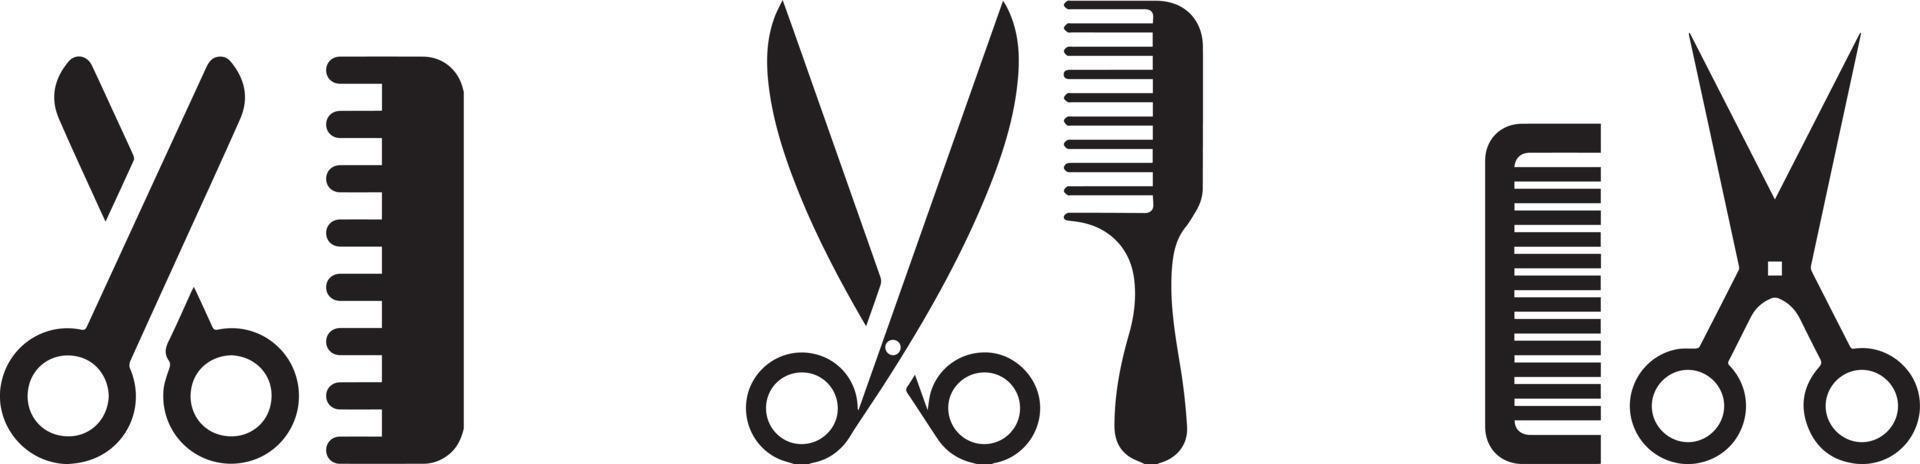 barbeiro com pente e tesoura. conjunto de ferramentas e acessórios de cabeleireiro vetor